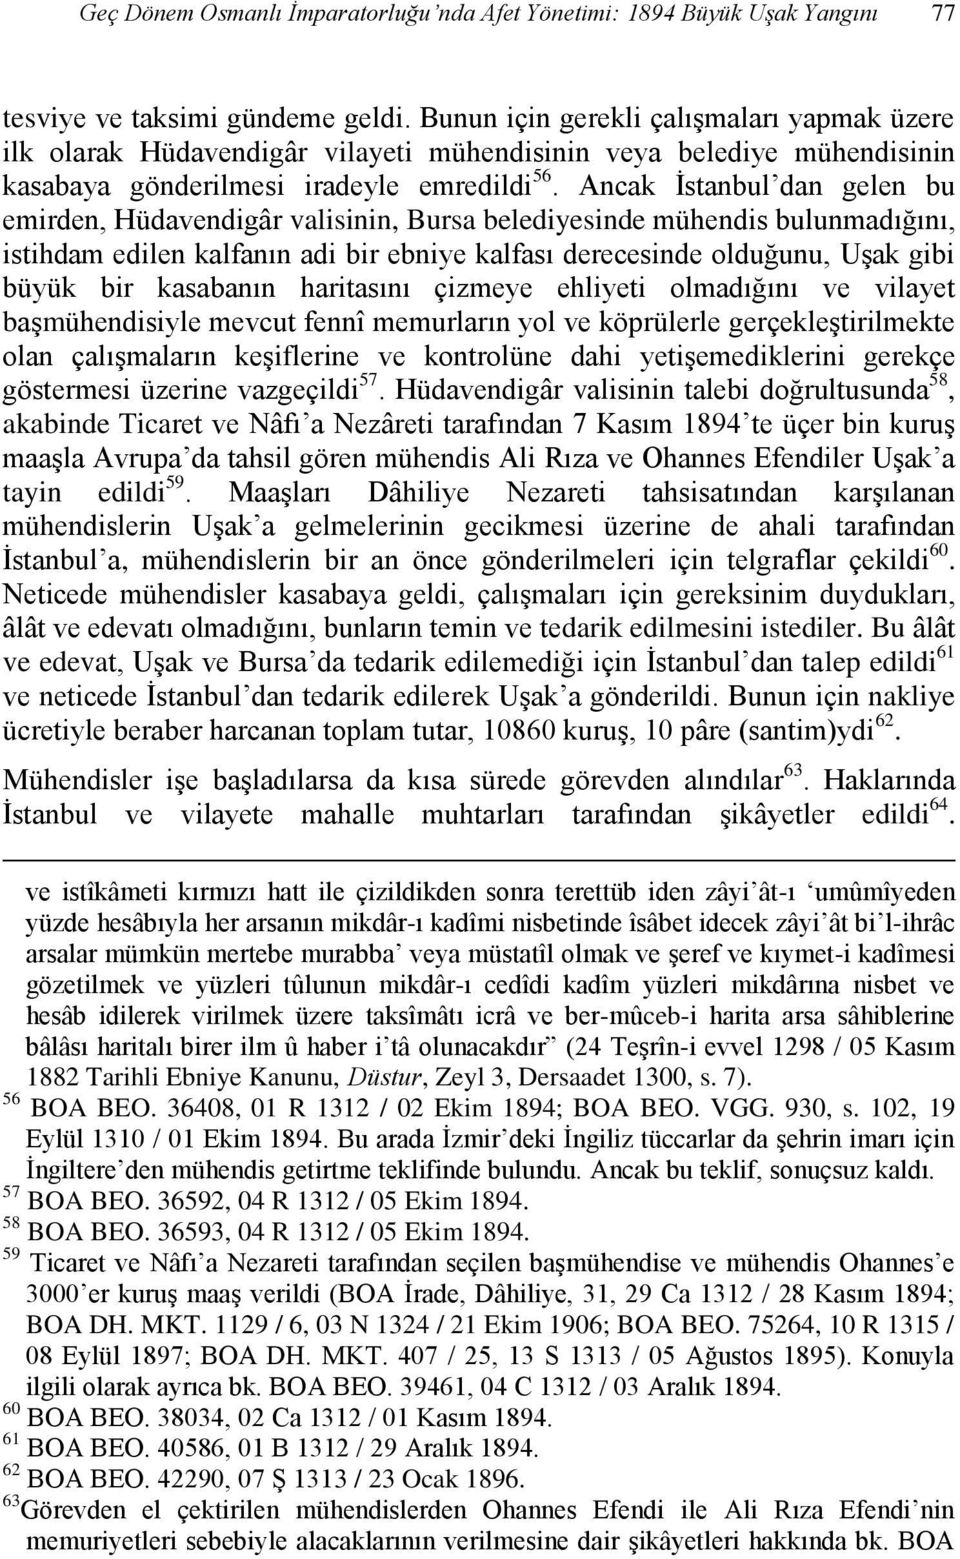 Ancak İstanbul dan gelen bu emirden, Hüdavendigâr valisinin, Bursa belediyesinde mühendis bulunmadığını, istihdam edilen kalfanın adi bir ebniye kalfası derecesinde olduğunu, Uşak gibi büyük bir